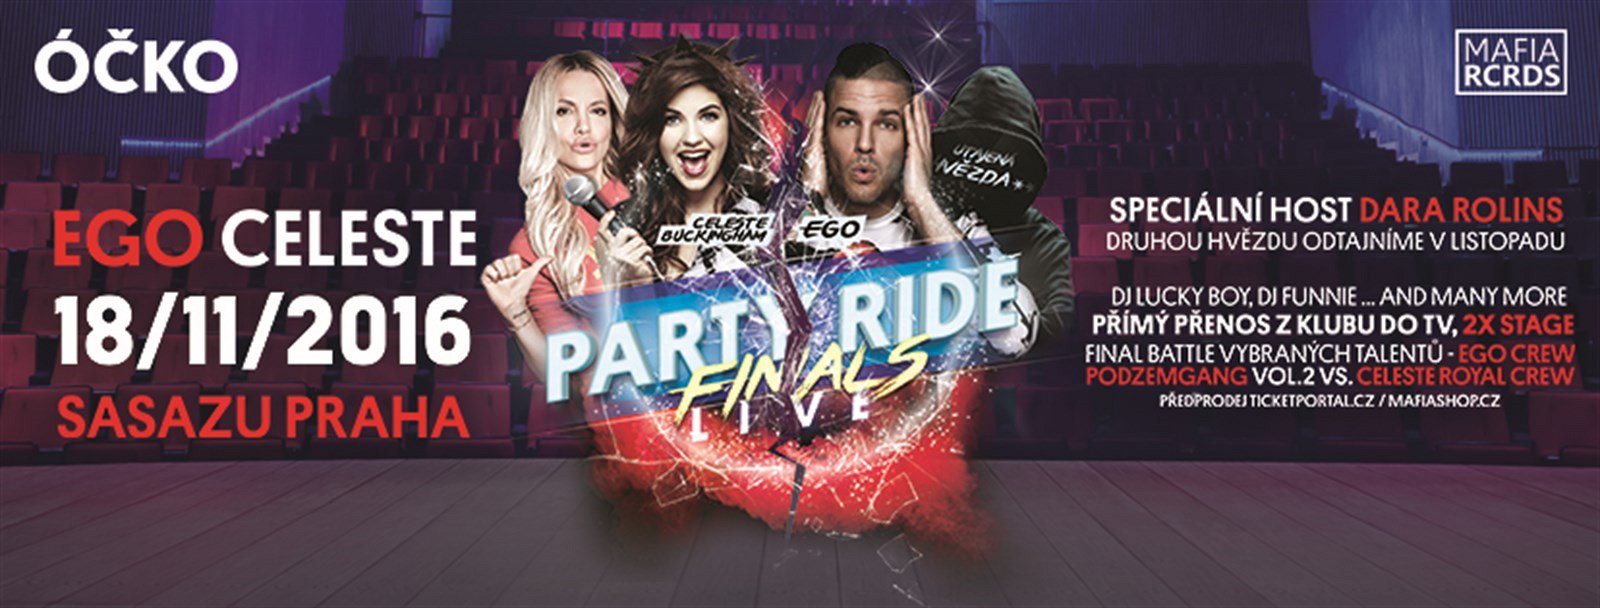 Party Ride Live finals v SaSaZu